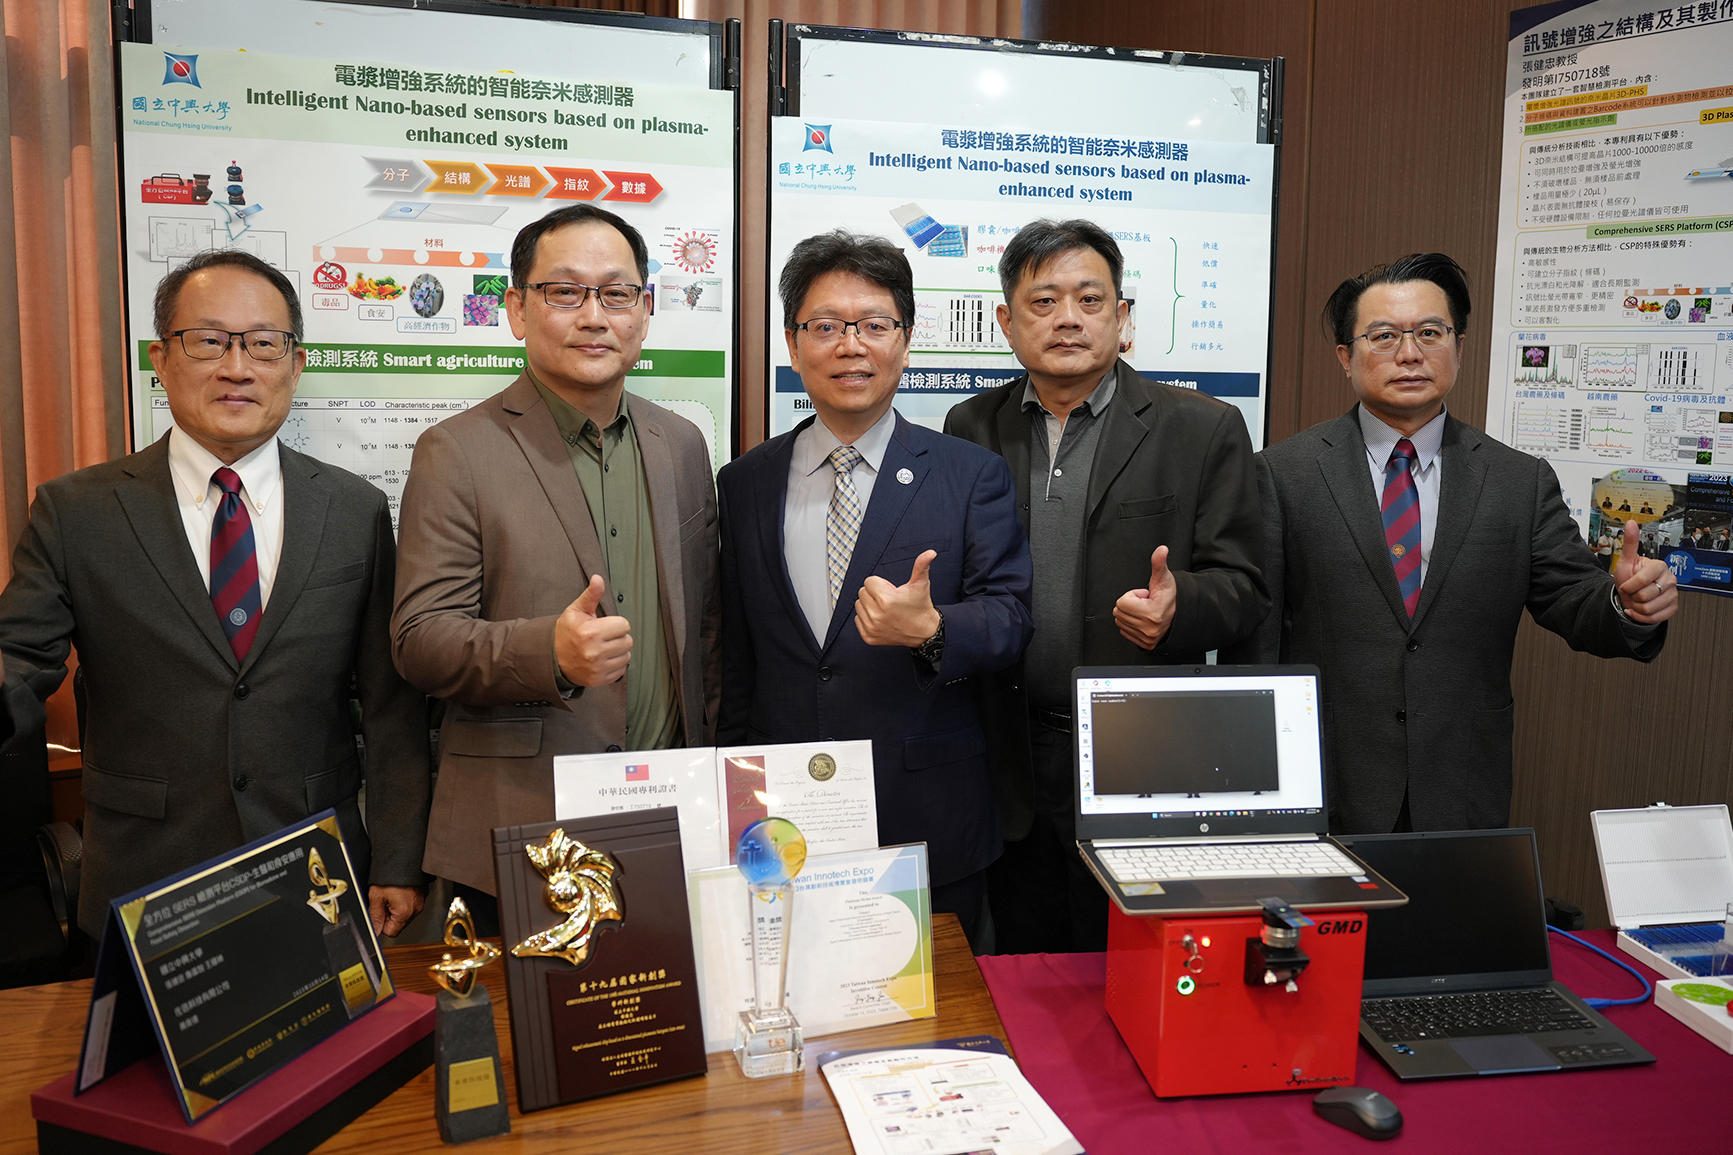 左起：王國禎教授、張健忠教授、陳全木副校長、佐信科技黃俊達董事長、宋振銘研發長